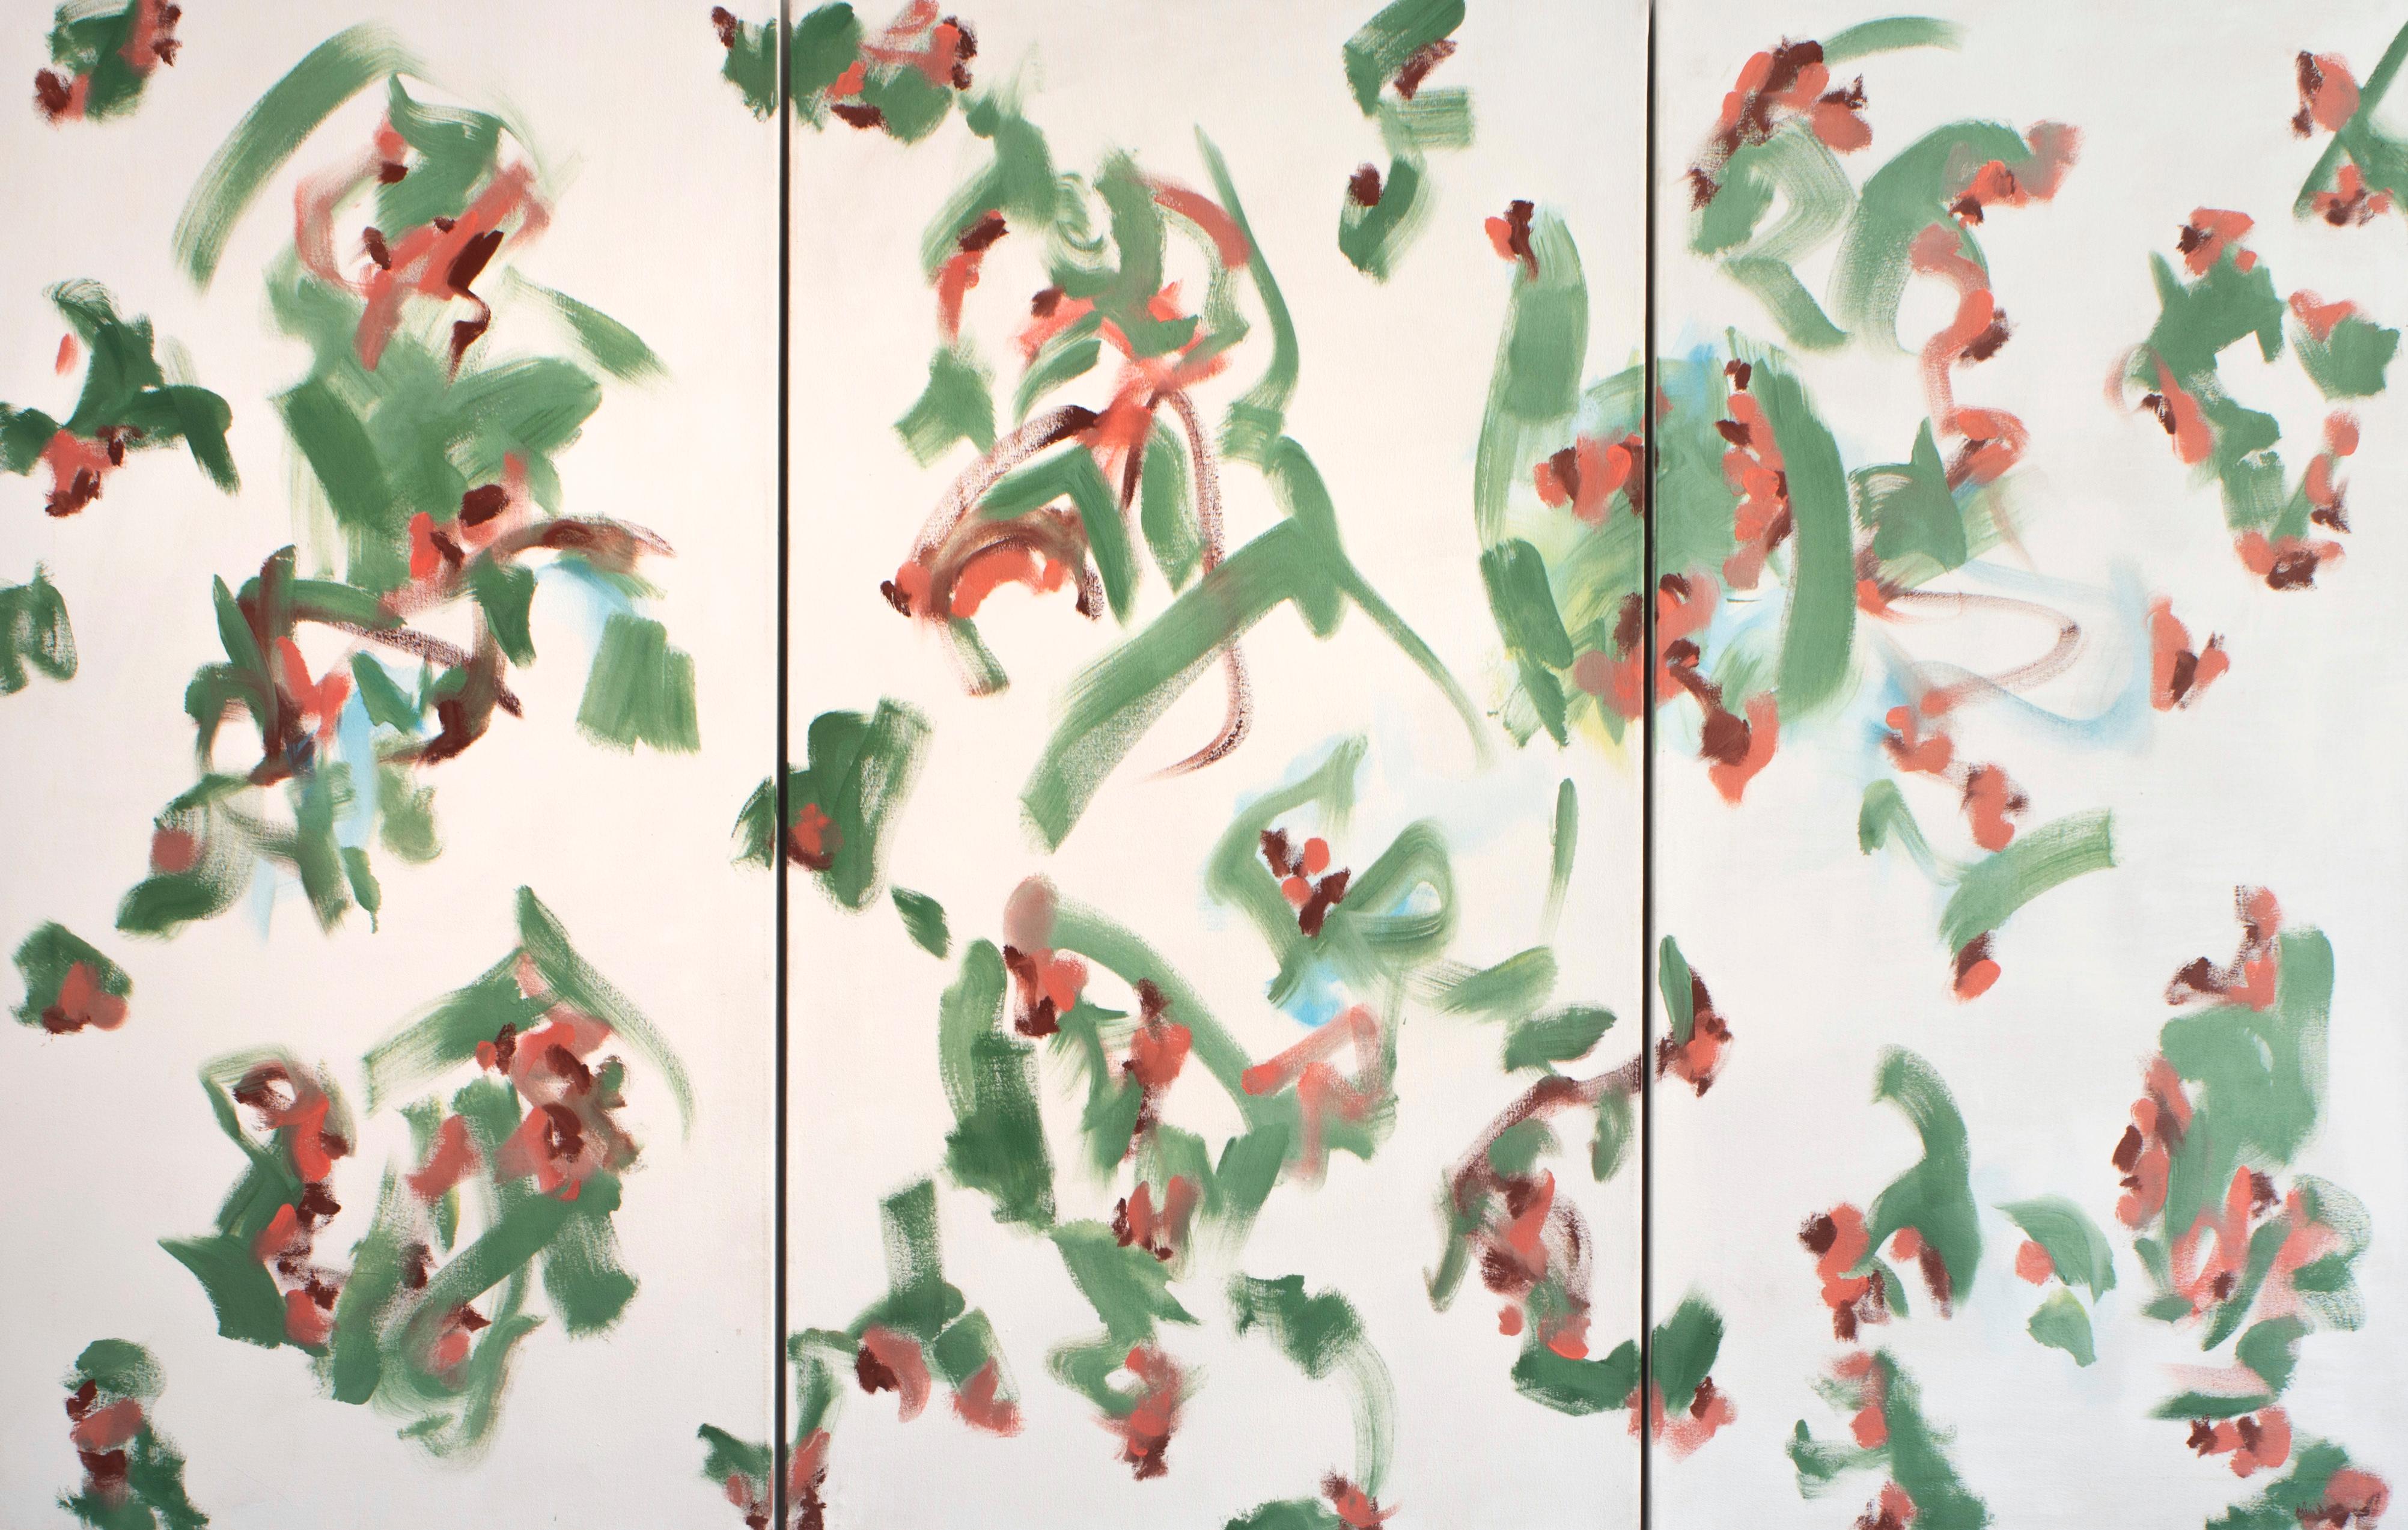 George McClancy (1930-2014) Abstraktes Muster-Triptychon. 
Acryl auf Leinwand 
75W" x 48H"

George McClancy erwarb einen MA in Malerei an der Katholischen Universität in Washington DC, wo er Schüler von Kenneth Noland war. George McClancy gehörte zu